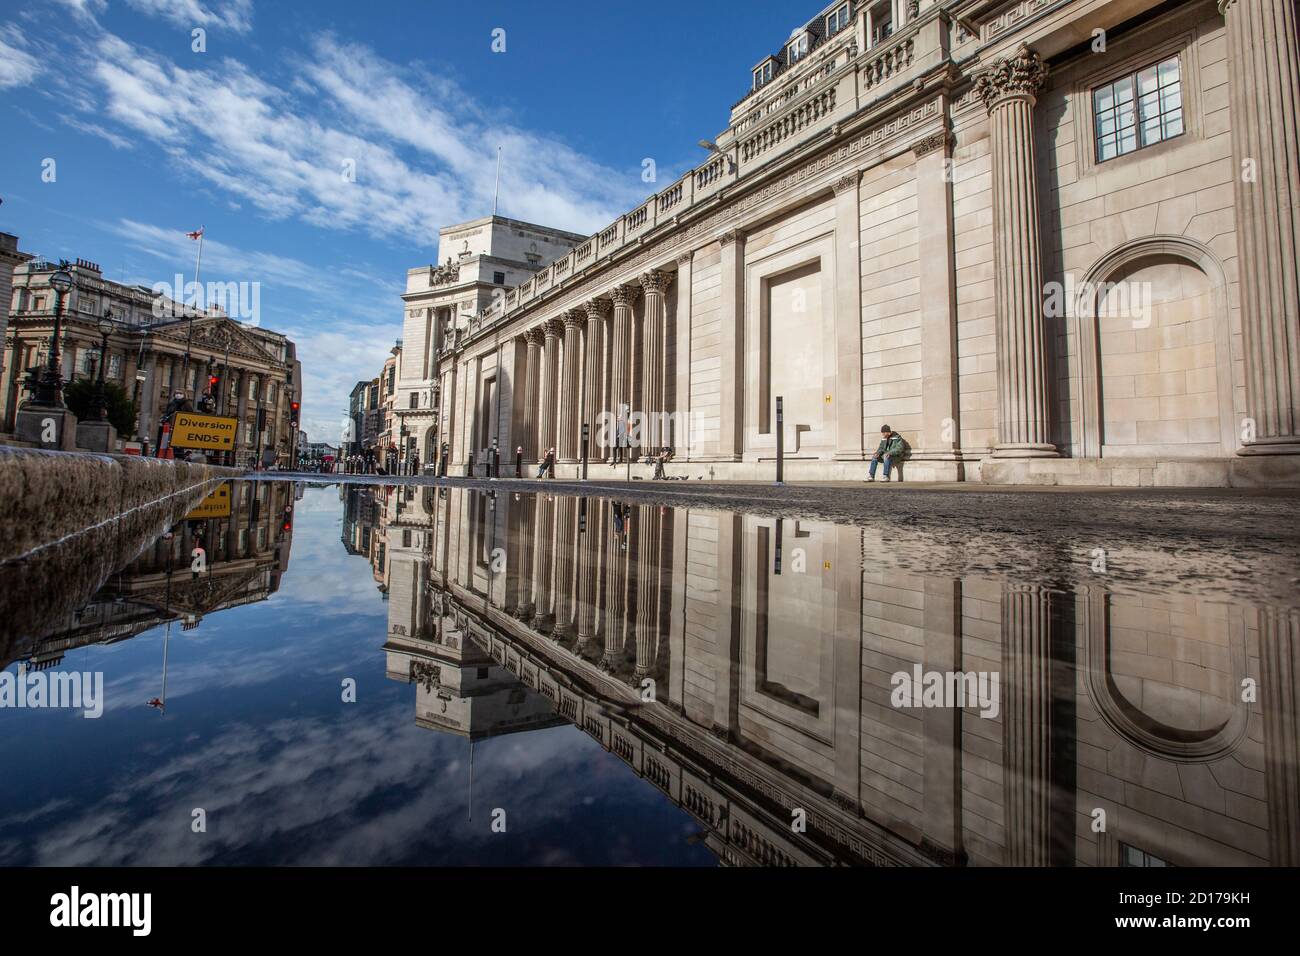 Bank of England e area di Royal Exchange nel cuore del quartiere finanziario della città di Londra si riflettono in un pozze su Threadneedle Street, Londra. Foto Stock